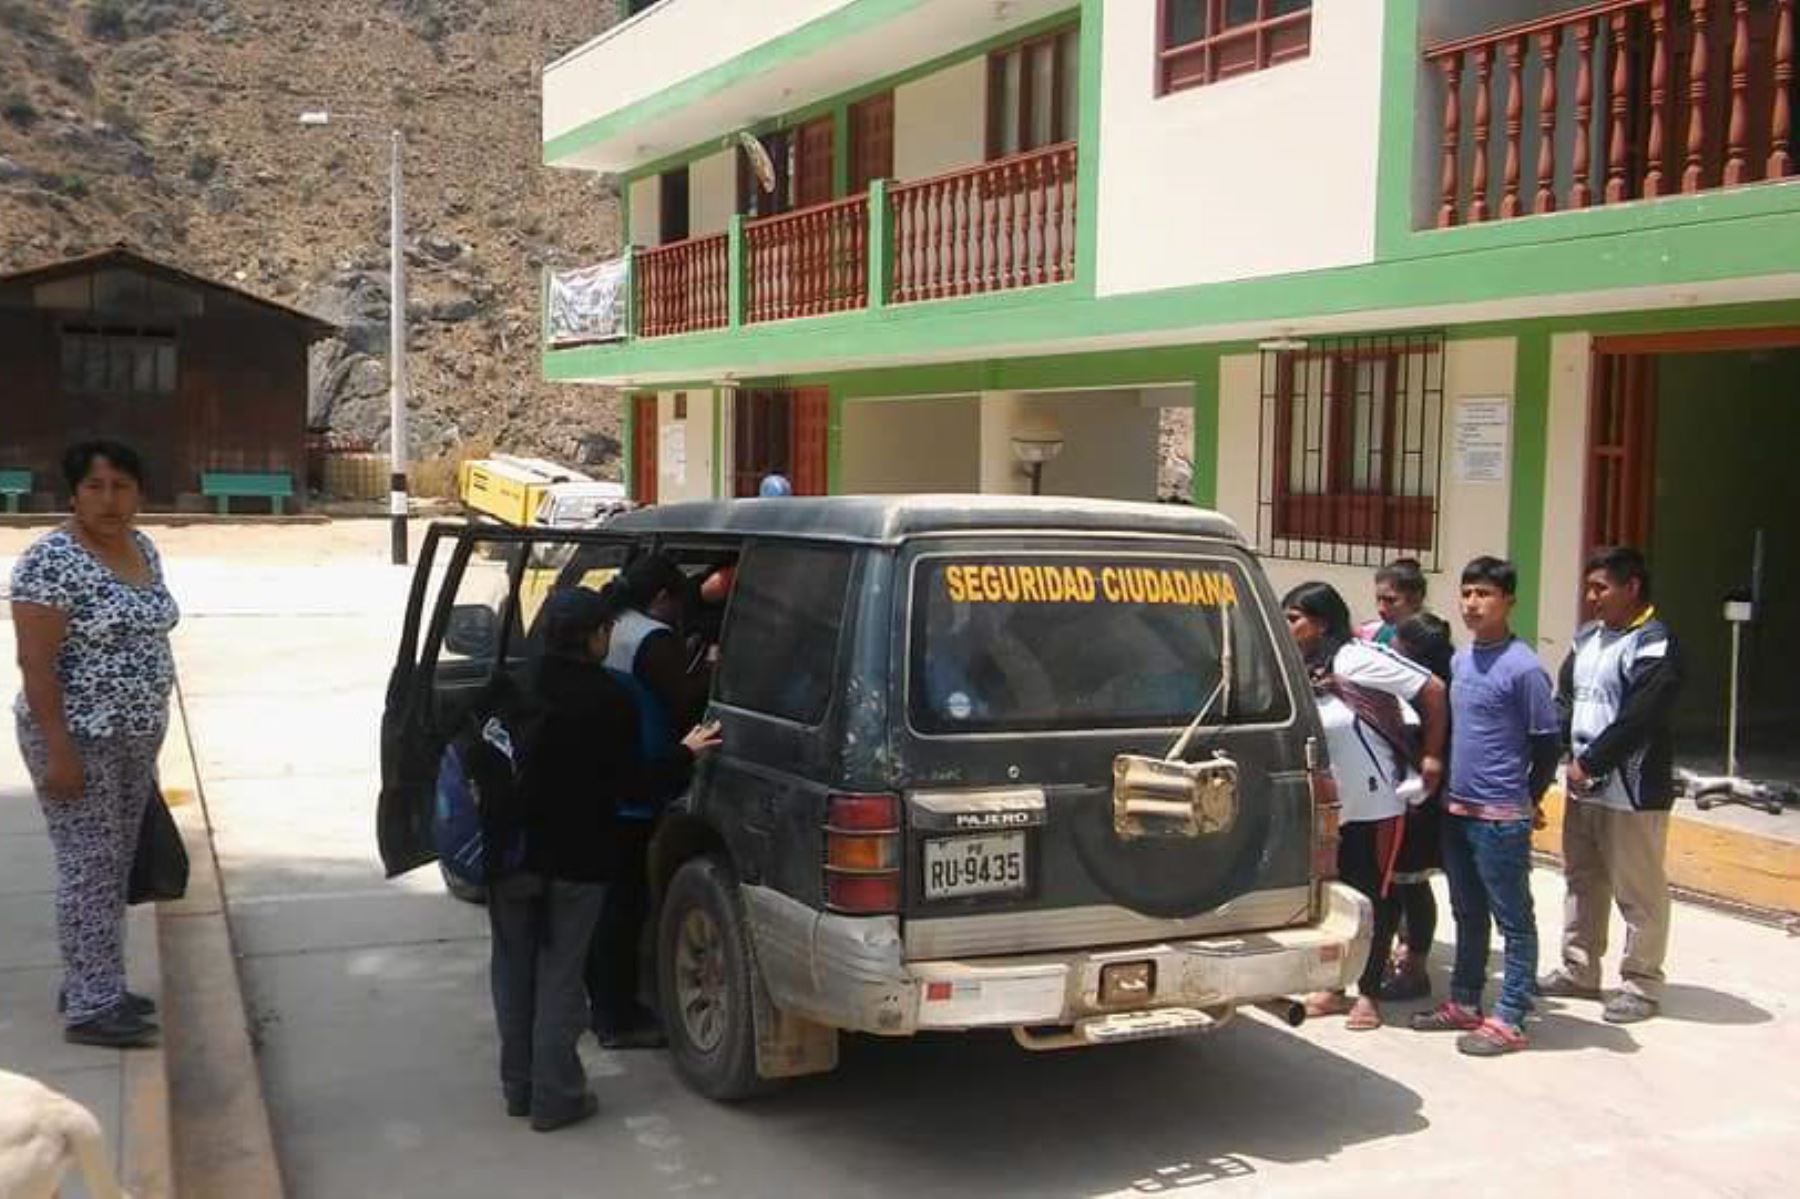 Personal de Seguridad Ciudadana de la Municipalidad Distrital de Cochabamba condujo a los docentes heridos al hospital de Huaraz, región Áncash.